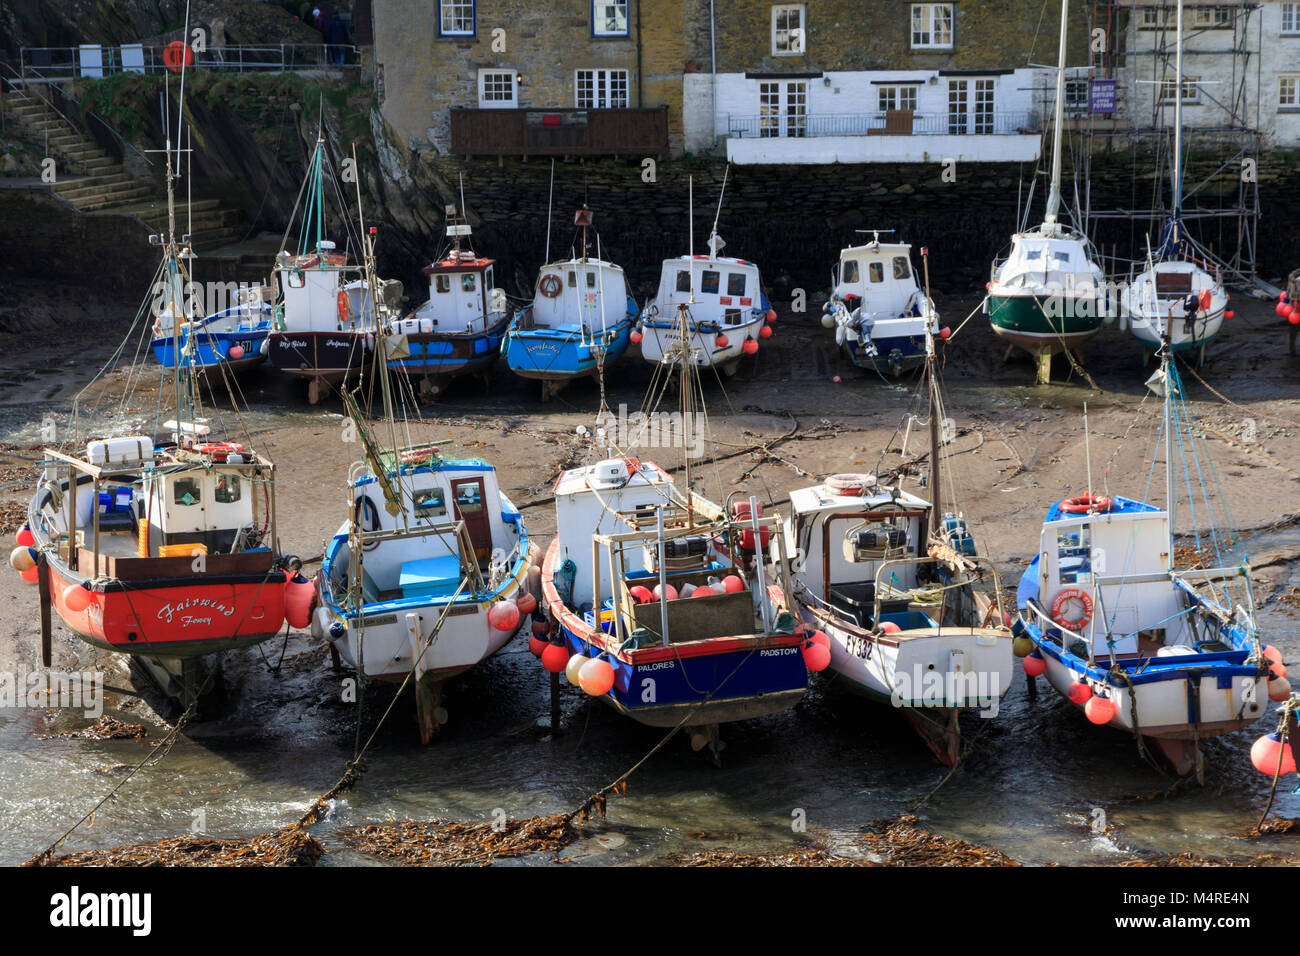 Bateaux de pêche côtiers colorés s'échouer à marée basse dans le port de Polperro, Cornwall, UK Banque D'Images